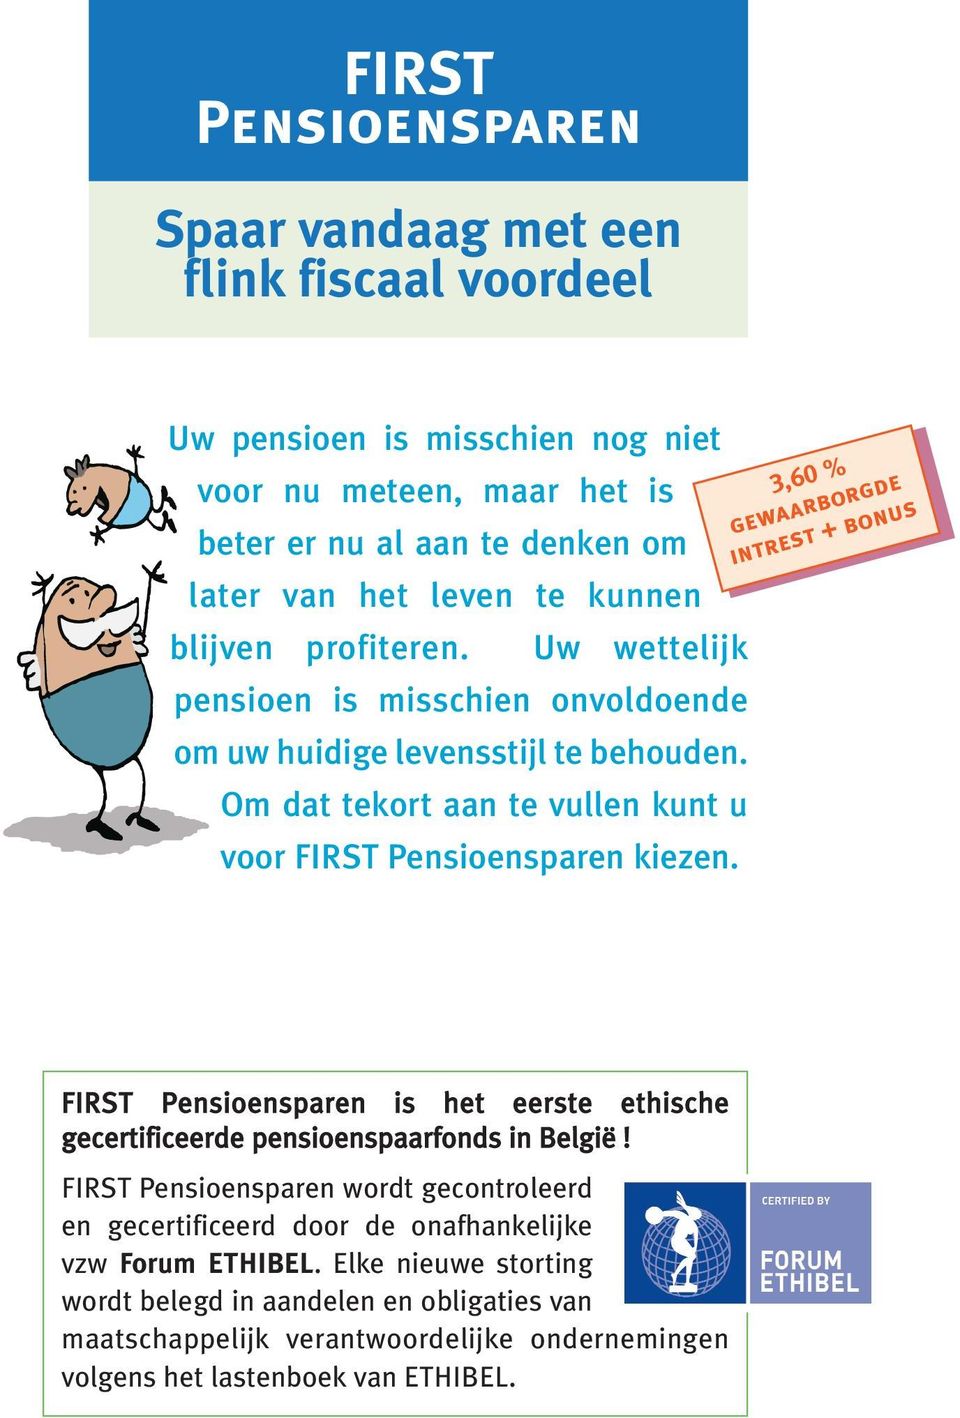 3,60 % gewaarborgde intrest + bonus FIRST Pensioensparen is het eerste ethische gecertificeerde pensioenspaarfonds in België!